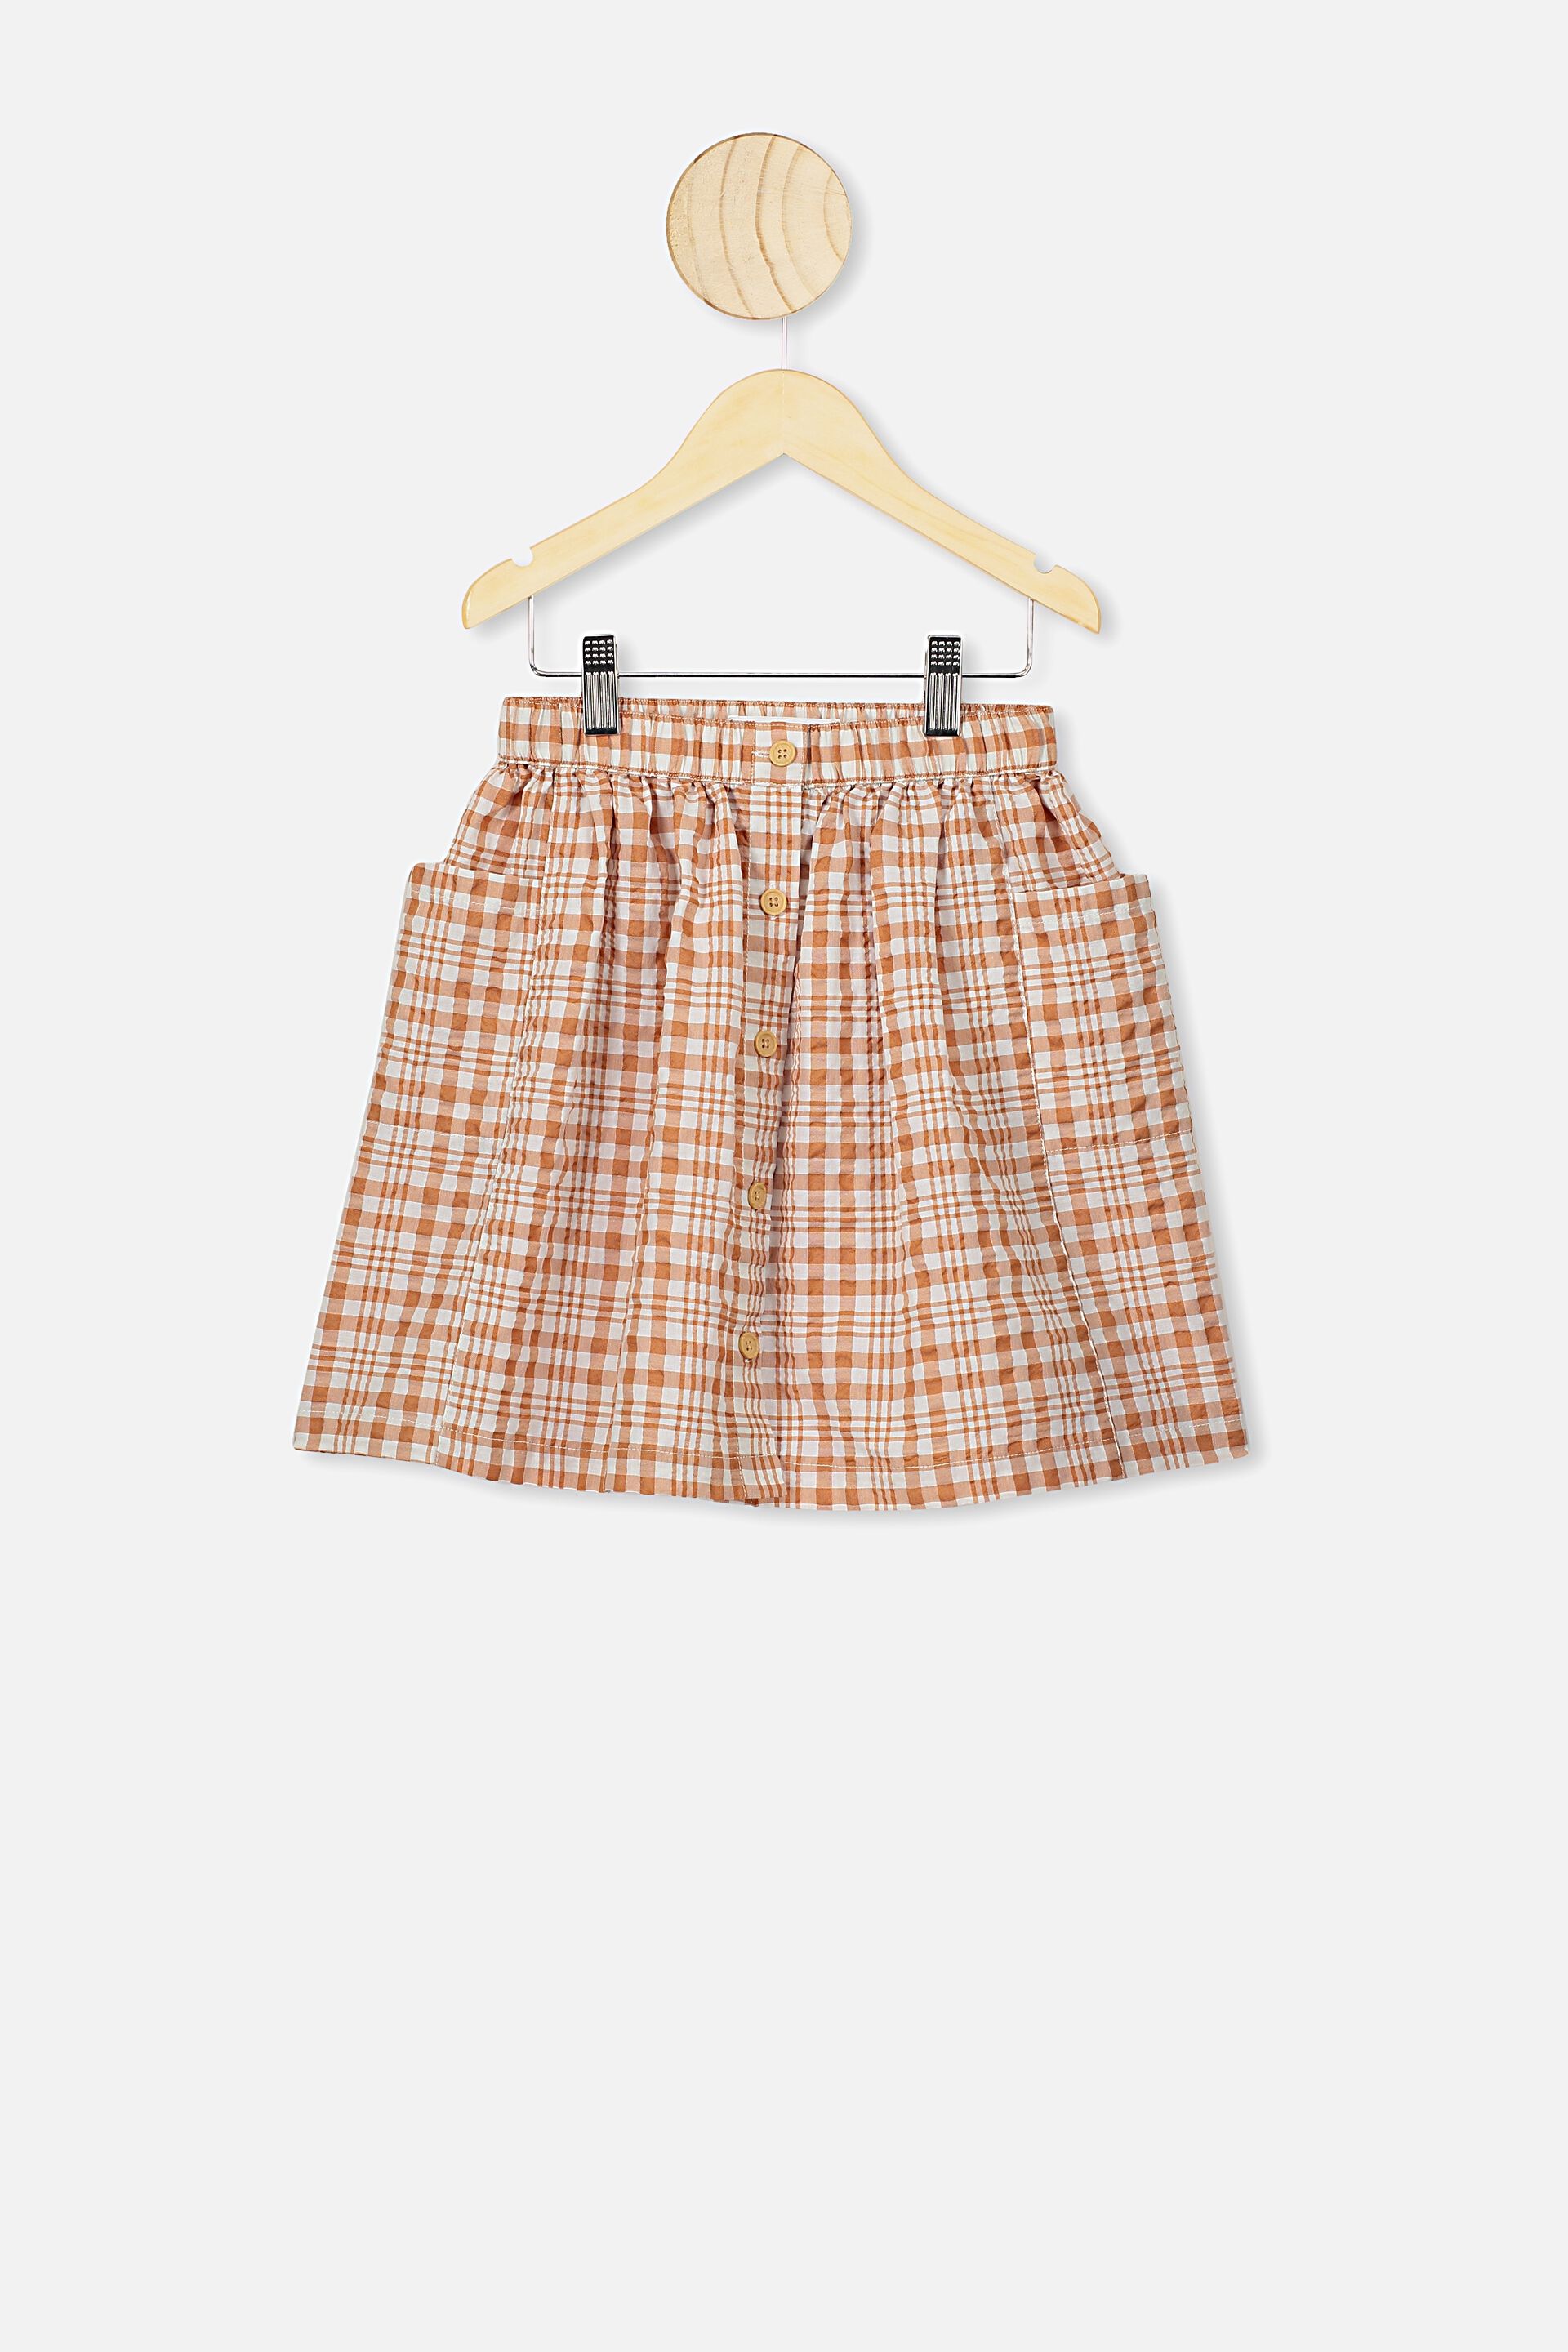 brown skirt cotton on